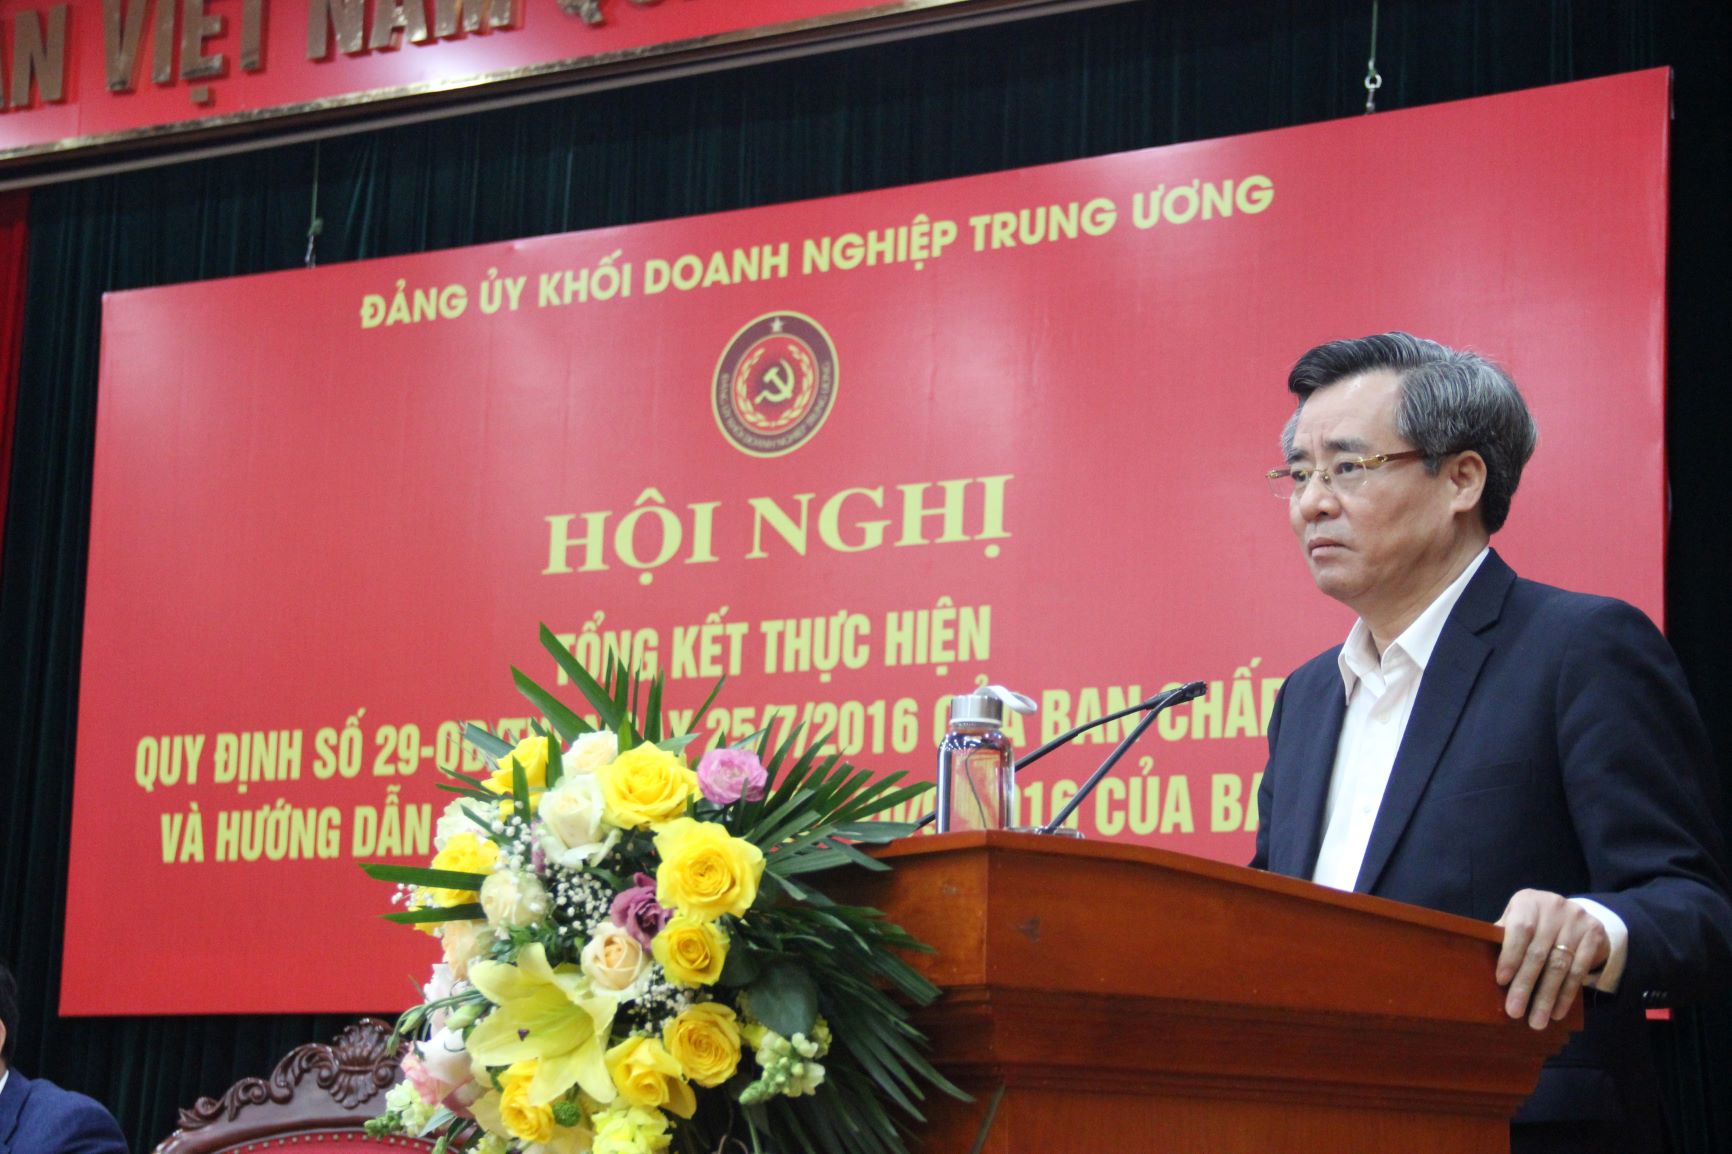 Đồng chí Nguyễn Quang Dương, Ủy viên BCH Trung ương Đảng, Phó Trưởng Ban Tổ chức Trung ương phát biểu chỉ đạo Hội nghị.